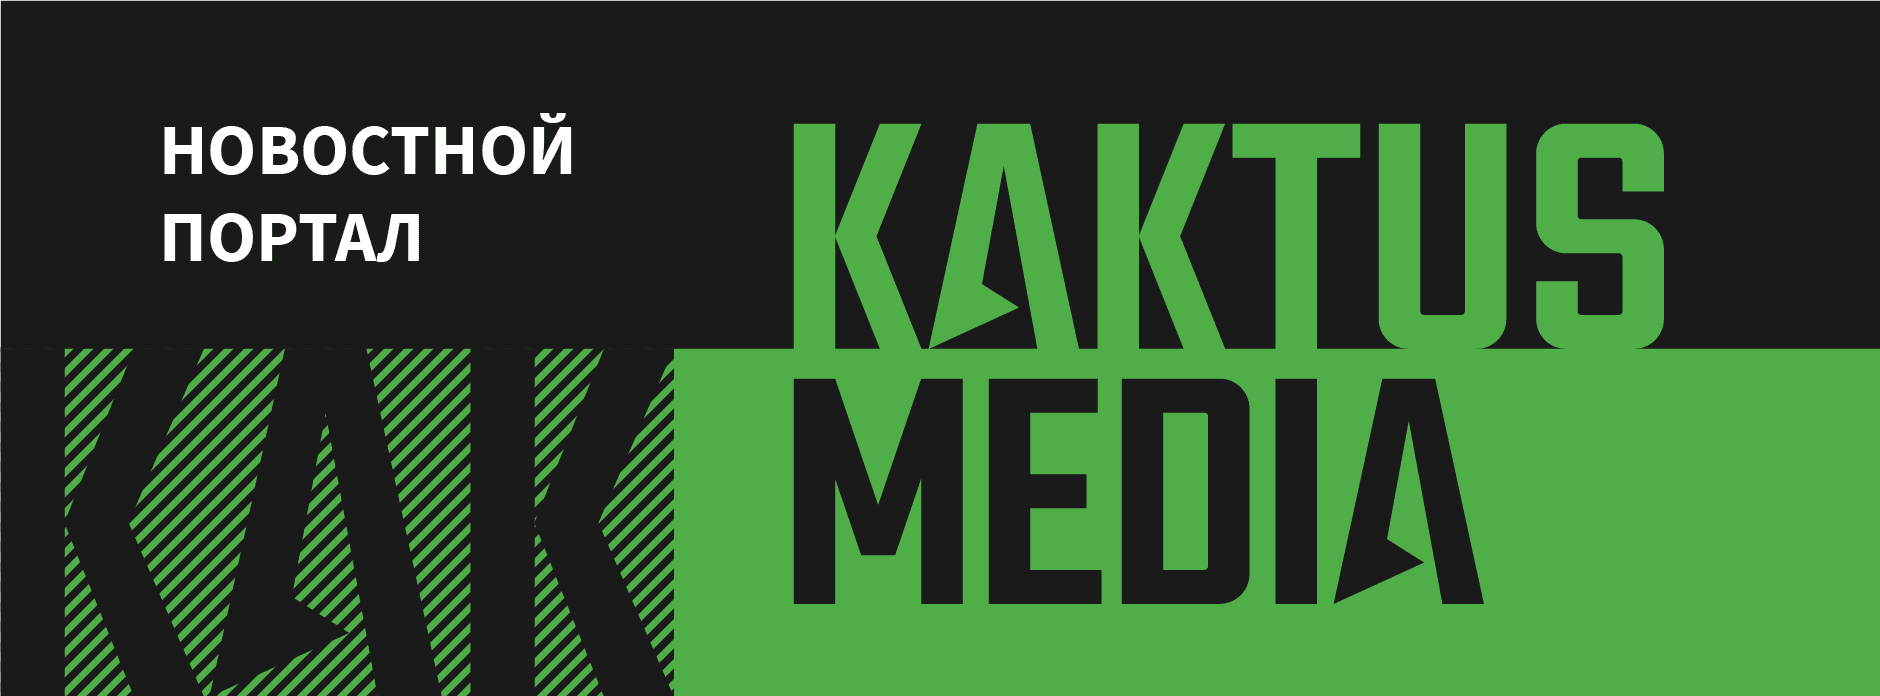 Милиция эвакуирует сотрудников Kaktus.media и 24.kg из офисов — сообщили, что в здании бомба